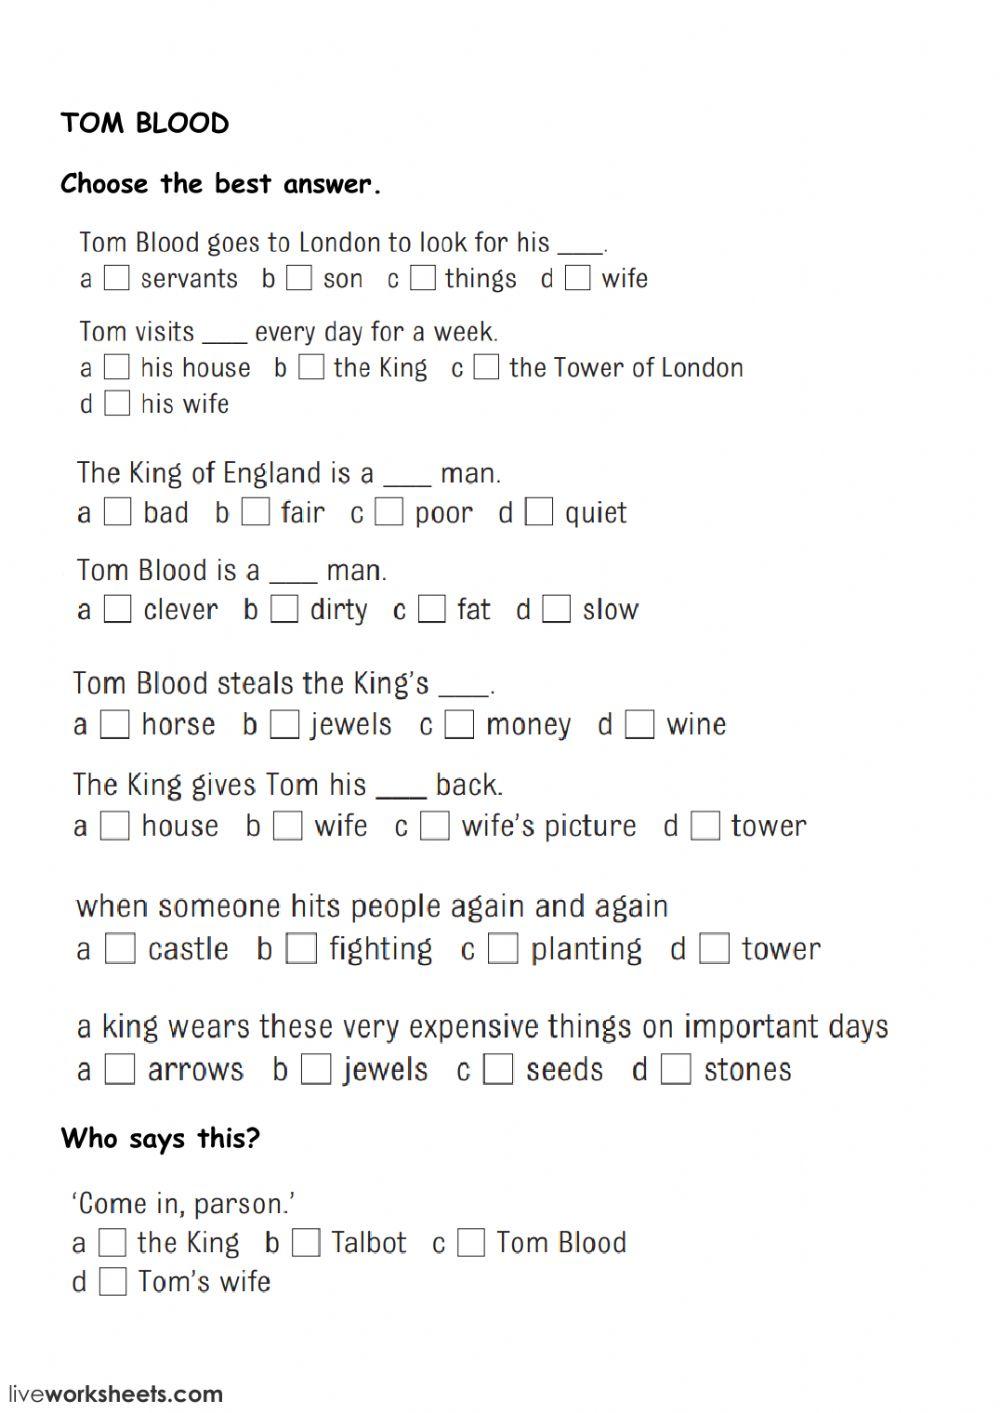 Tom blood - reading comprehension